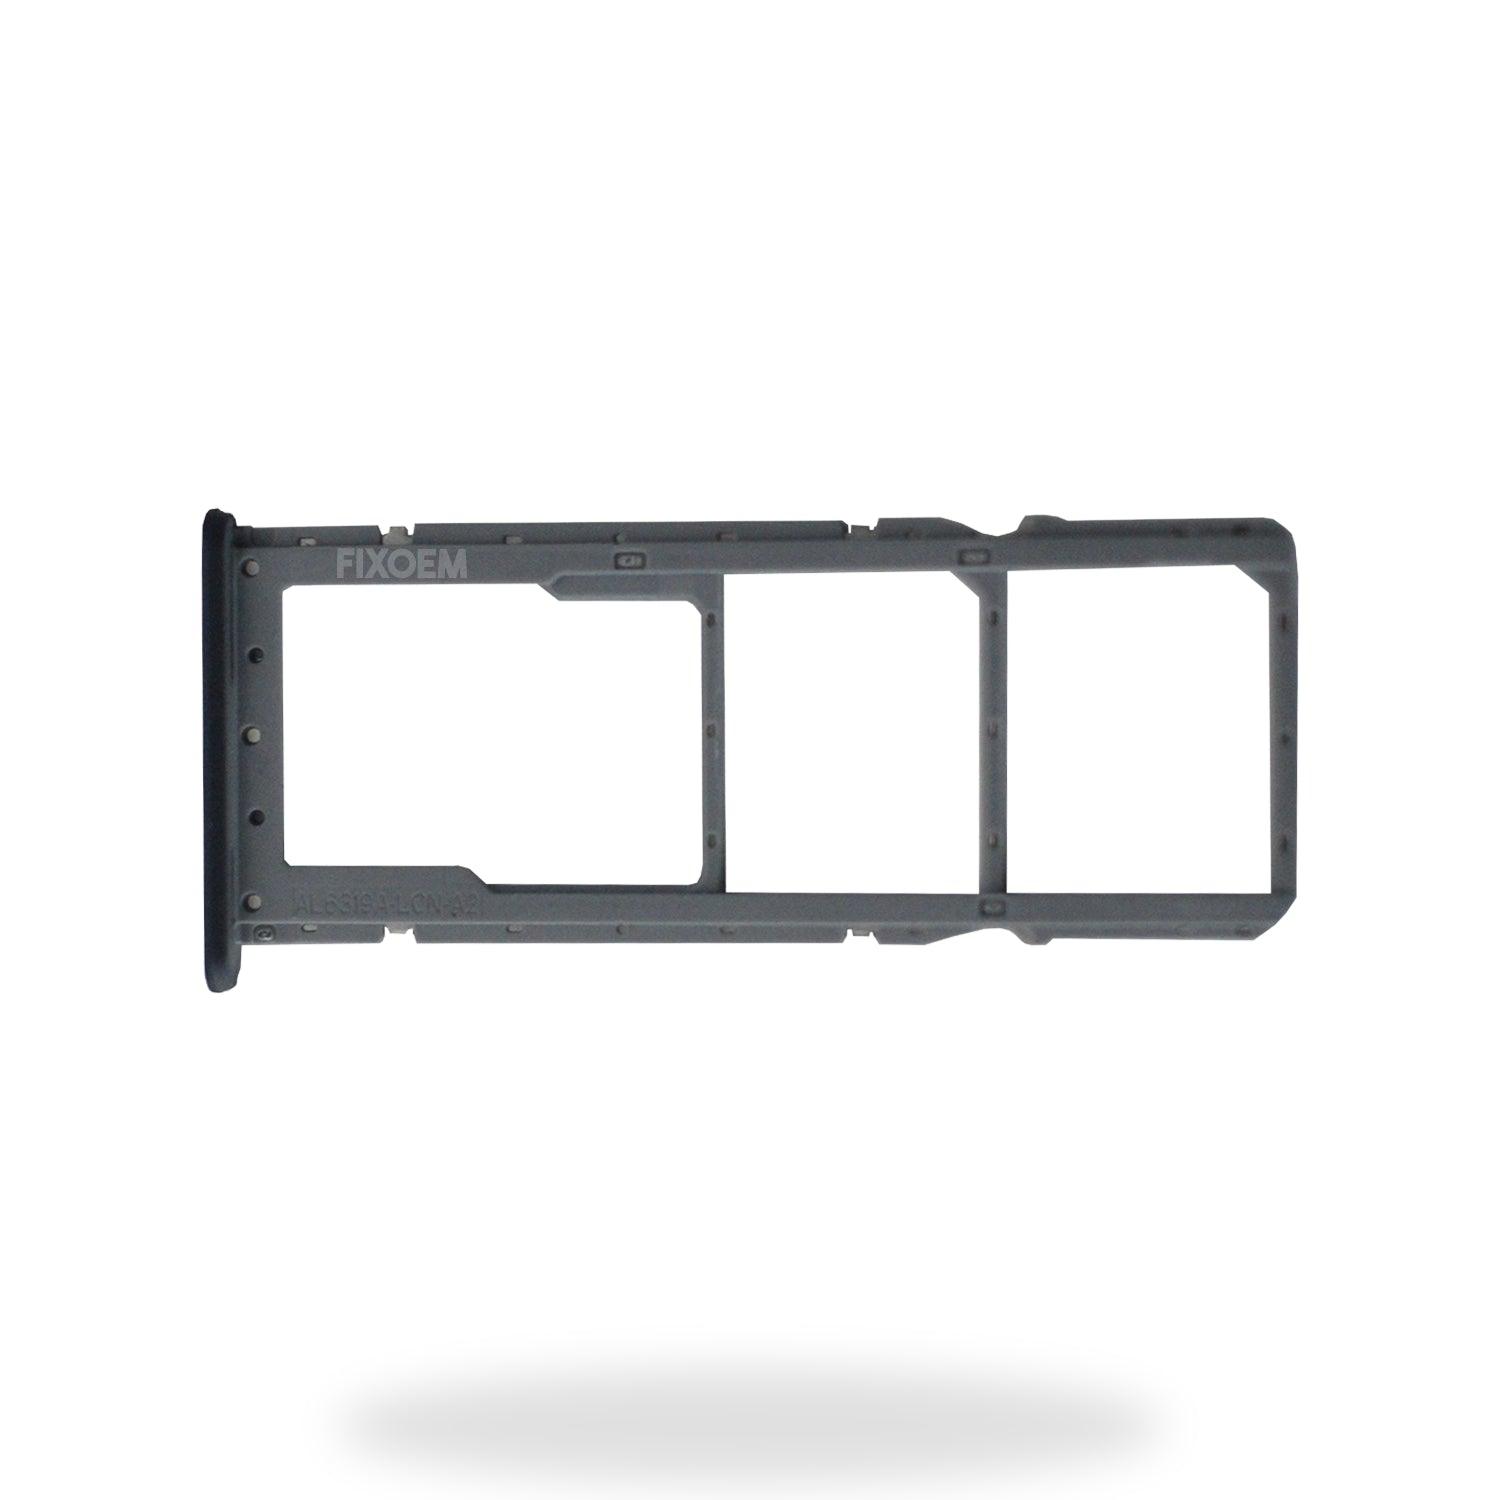 Charola Sim Oppo A77 a solo $ 30.00 Refaccion y puestos celulares, refurbish y microelectronica.- FixOEM